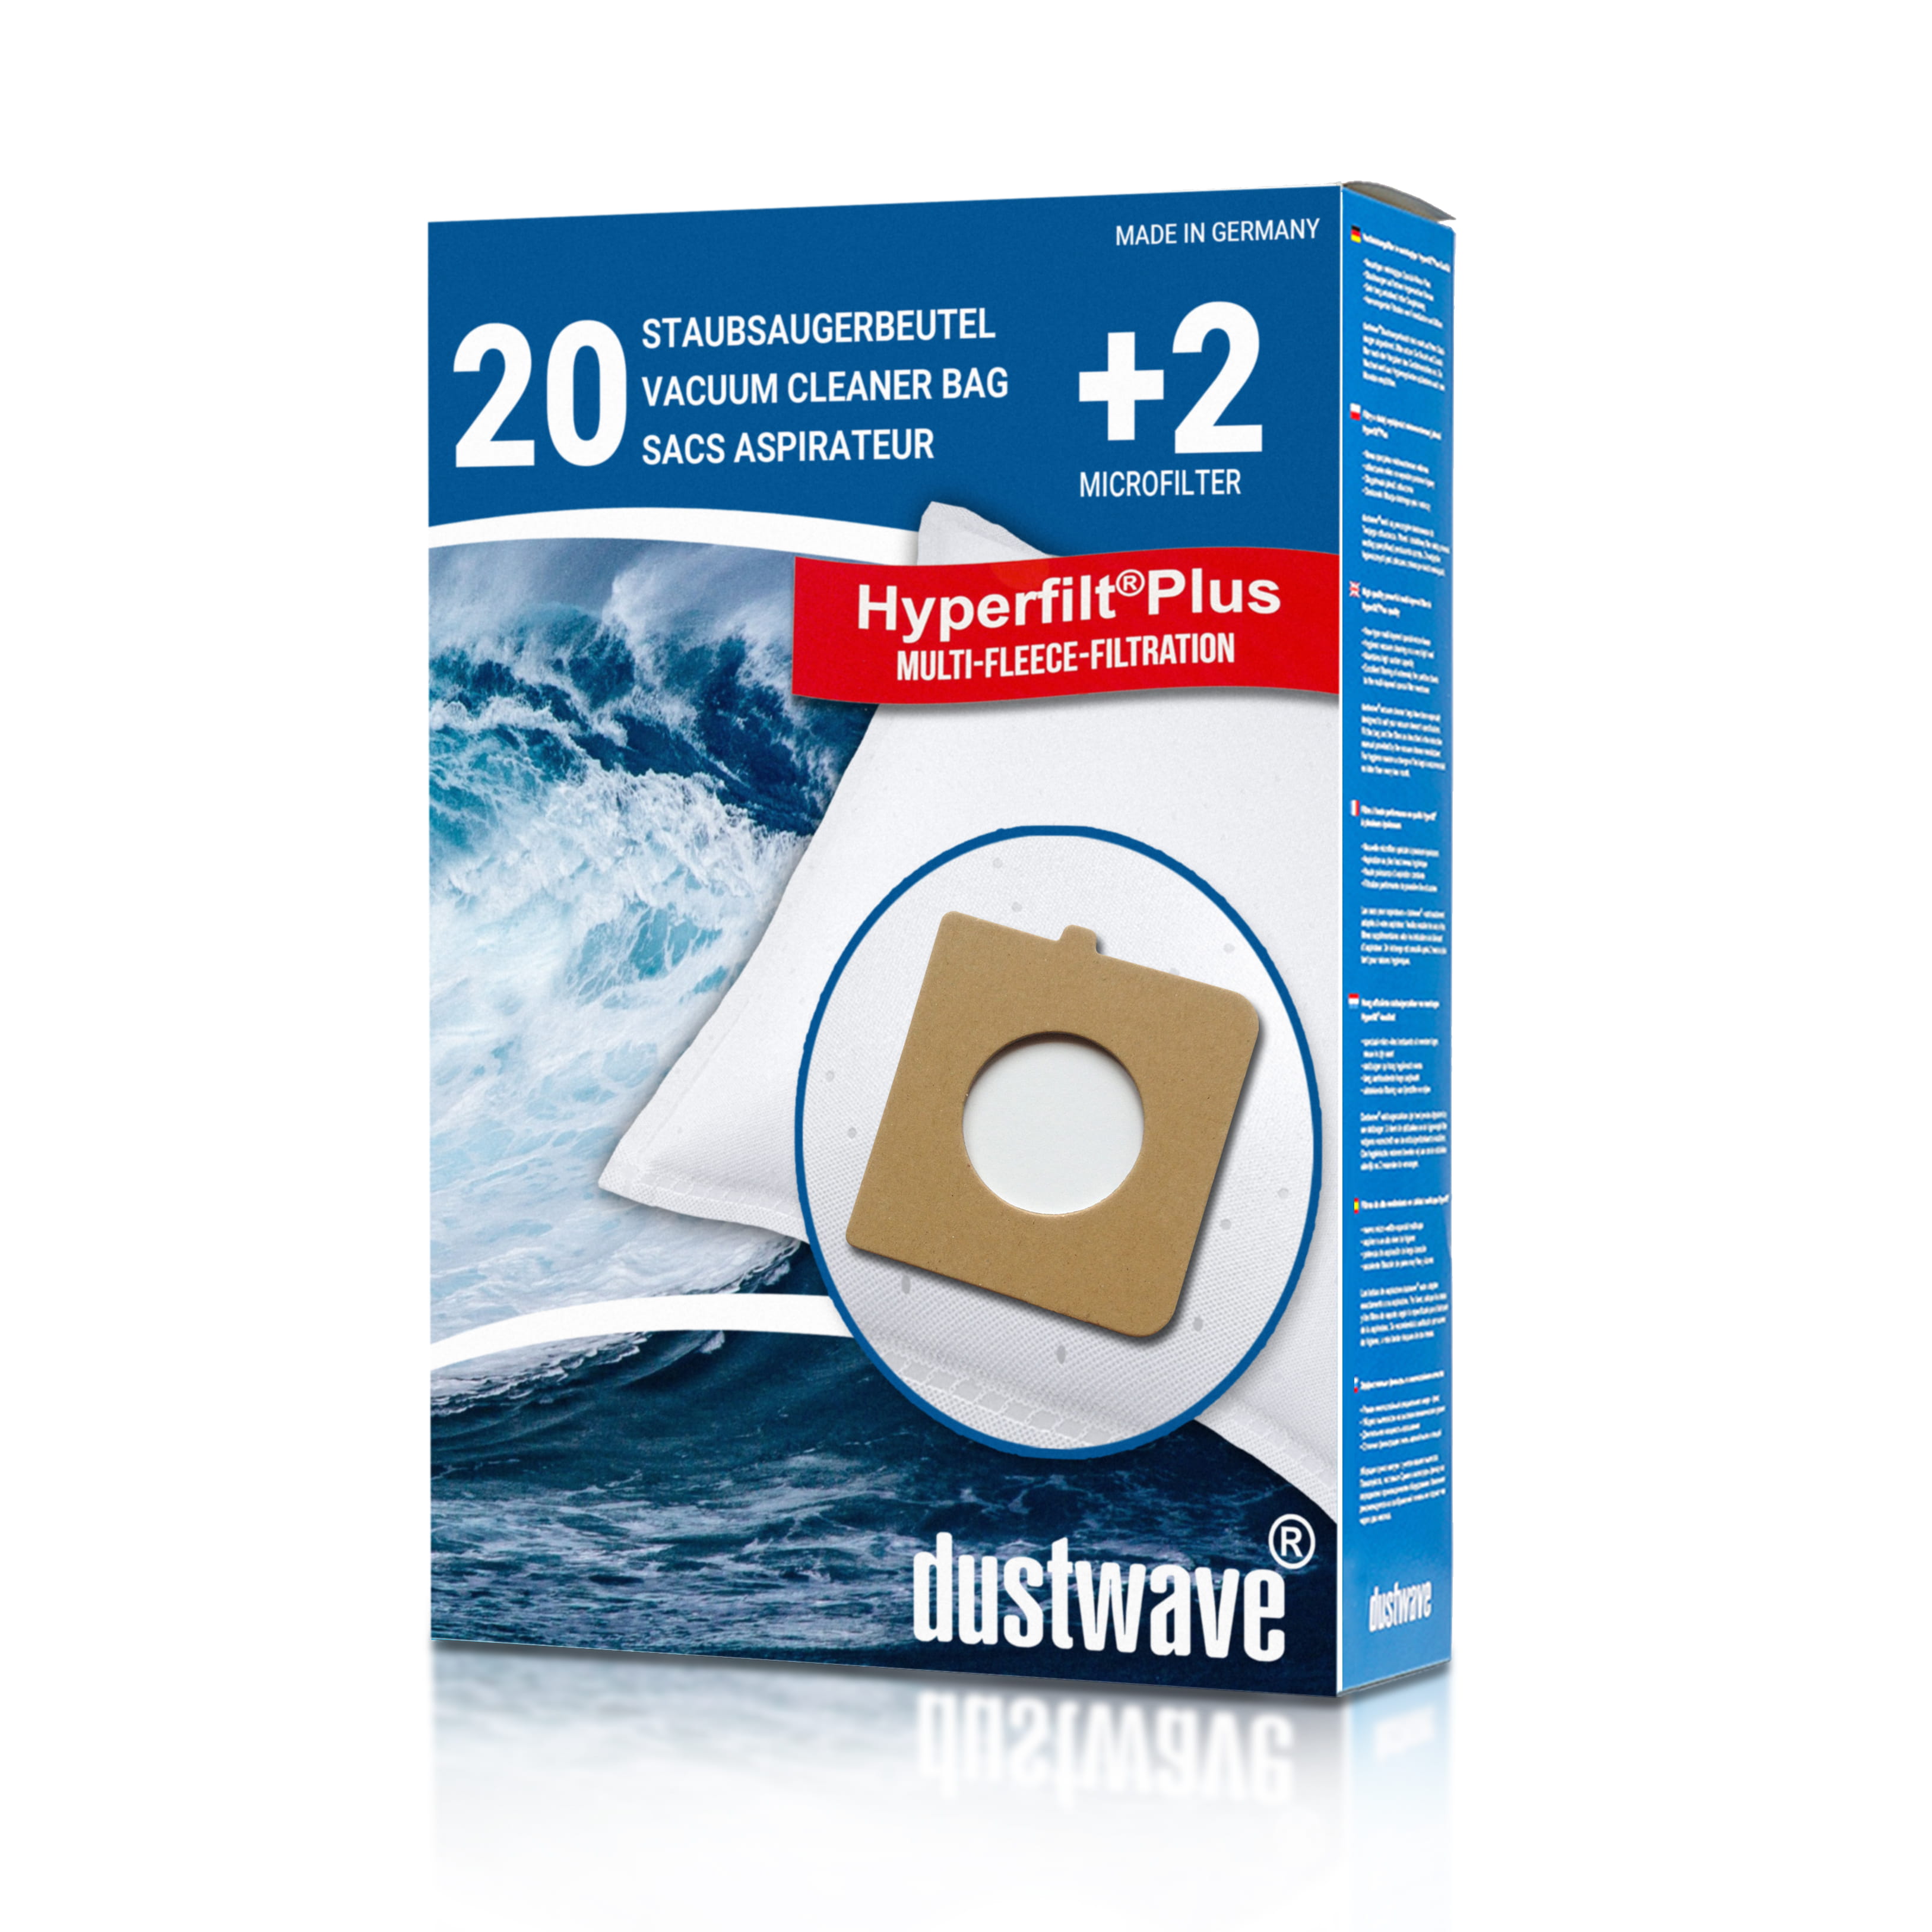 Dustwave® 20 Staubsaugerbeutel für Hoover TX51PET 021 Telios Extra - hocheffizient, mehrlagiges Mikrovlies mit Hygieneverschluss - Made in Germany